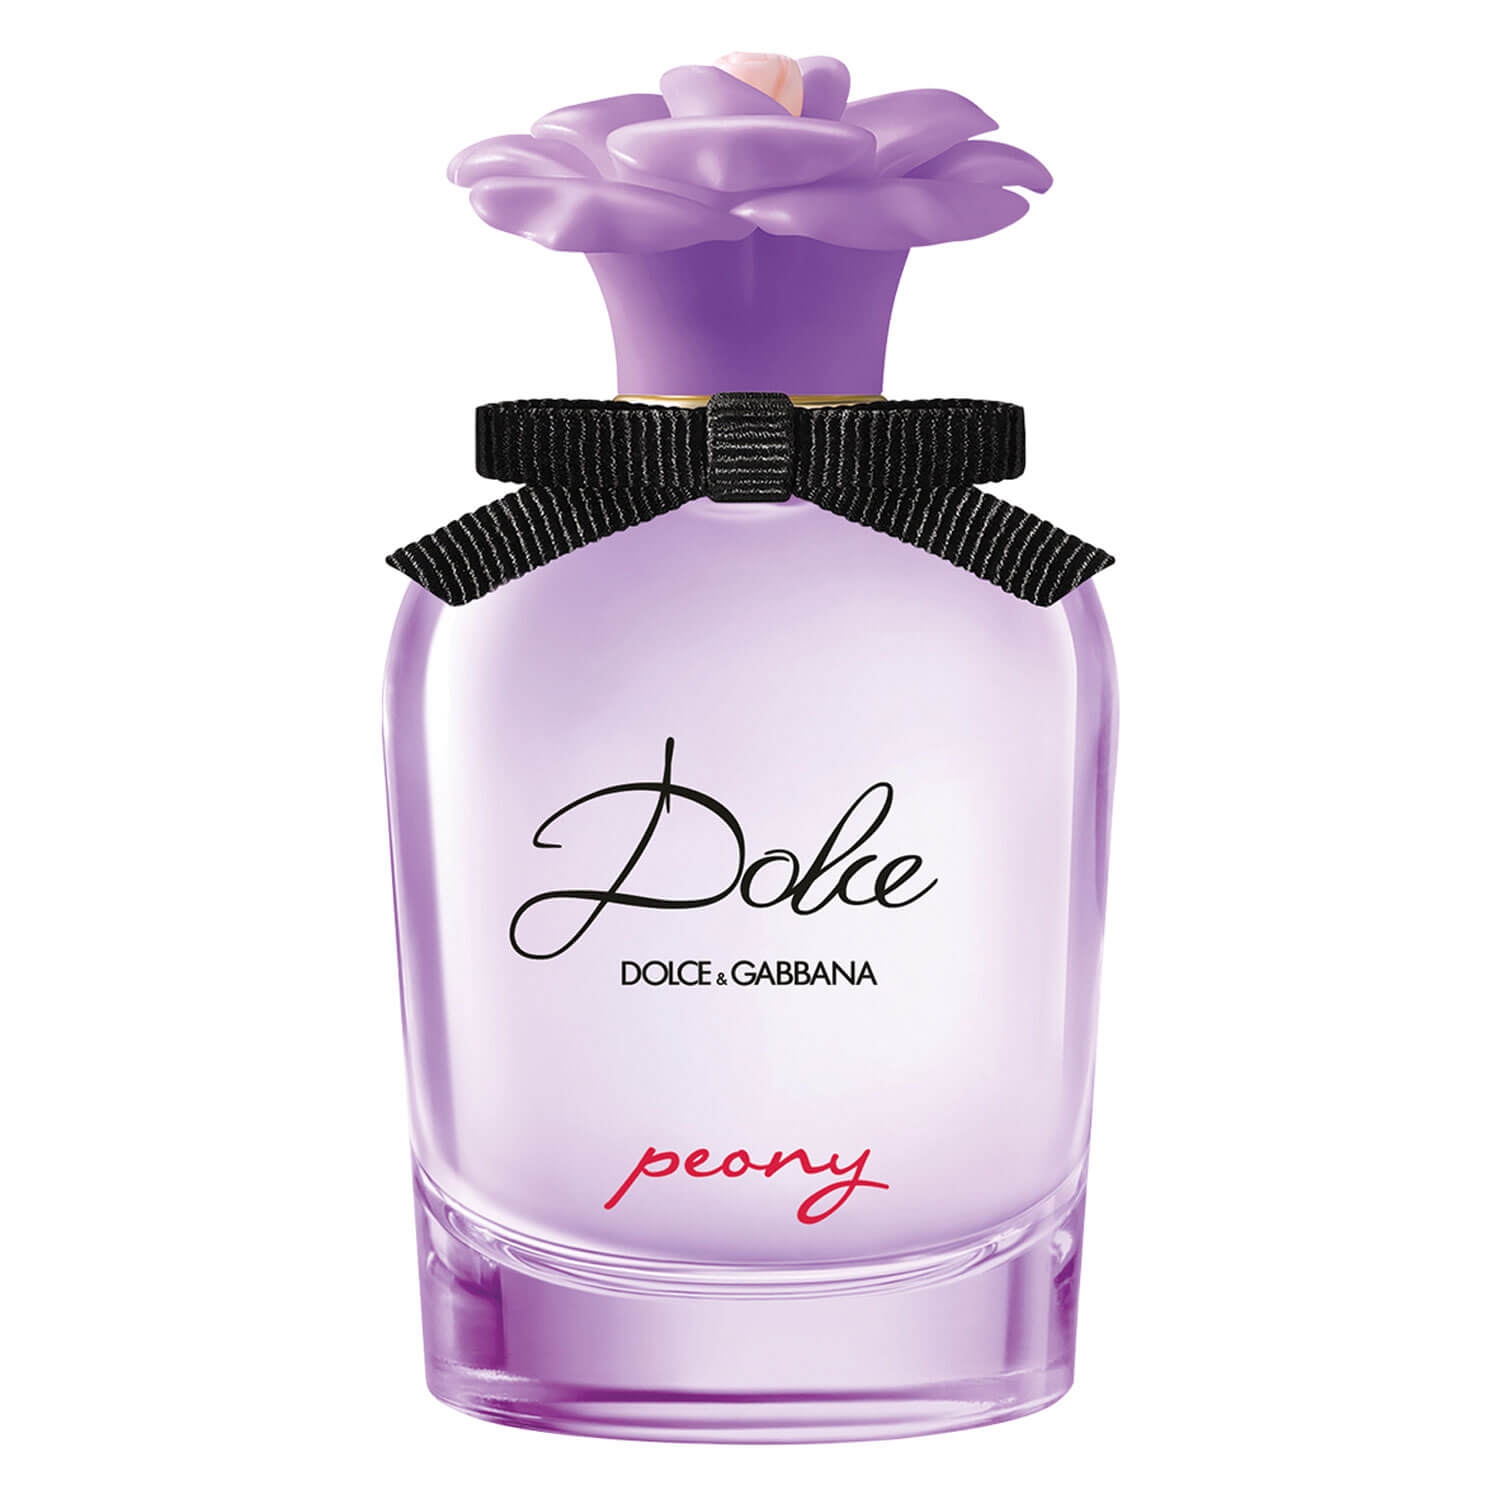 Product image from D&G Dolce - Peony Eau de Parfum